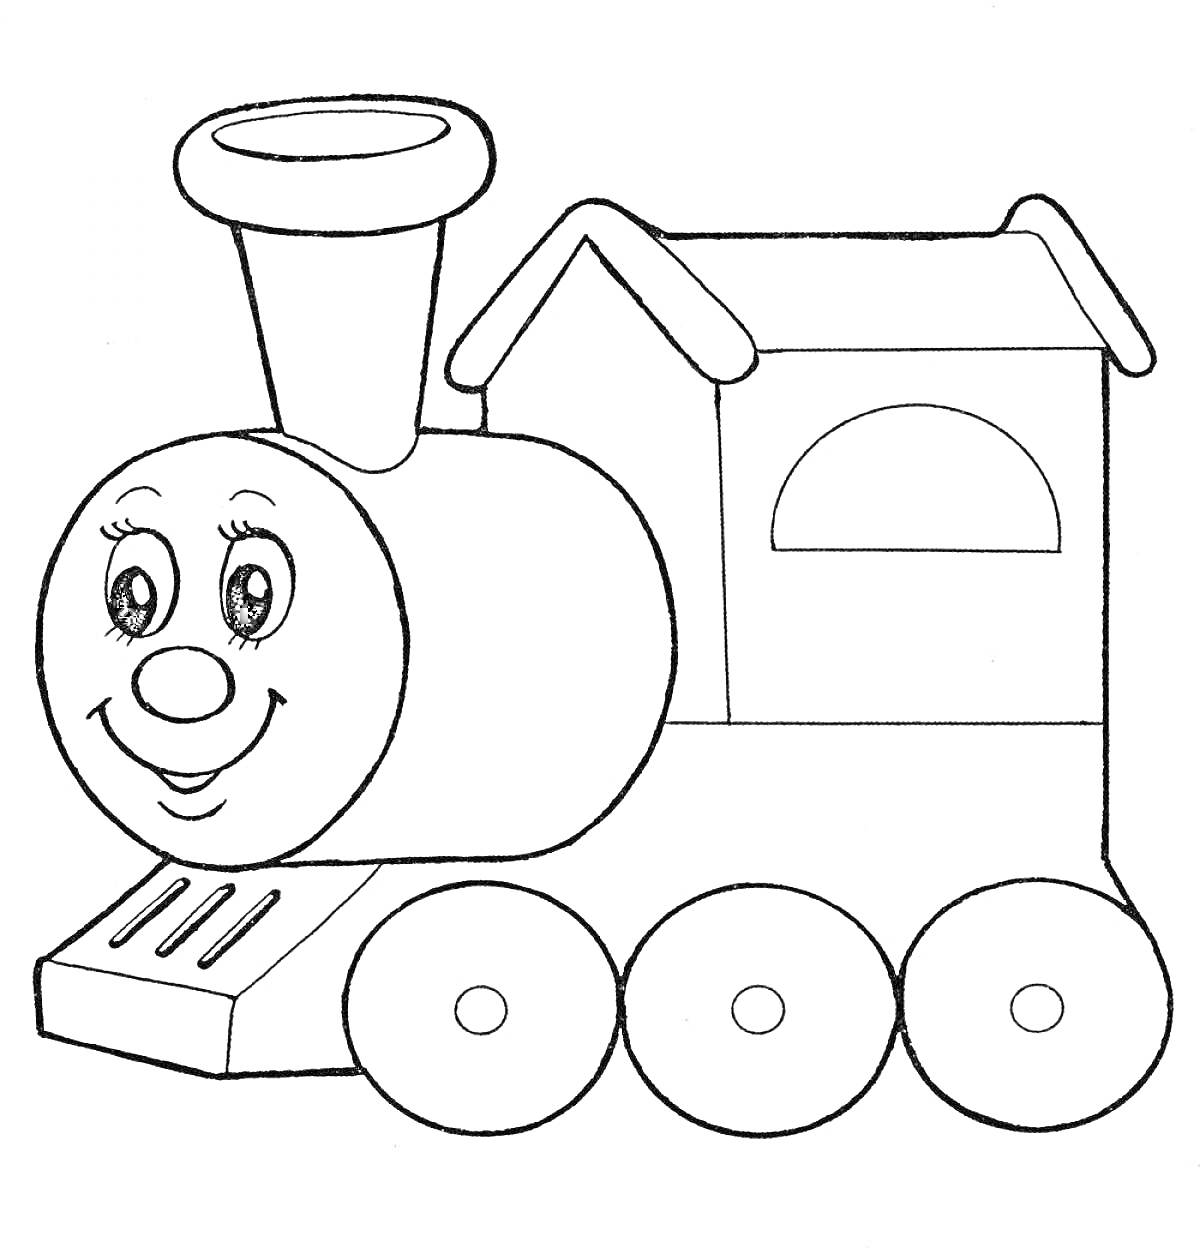 Раскраска Паровоз с улыбающимся лицом, с трубой, тремя колесами и вырезанным полукруглым окном